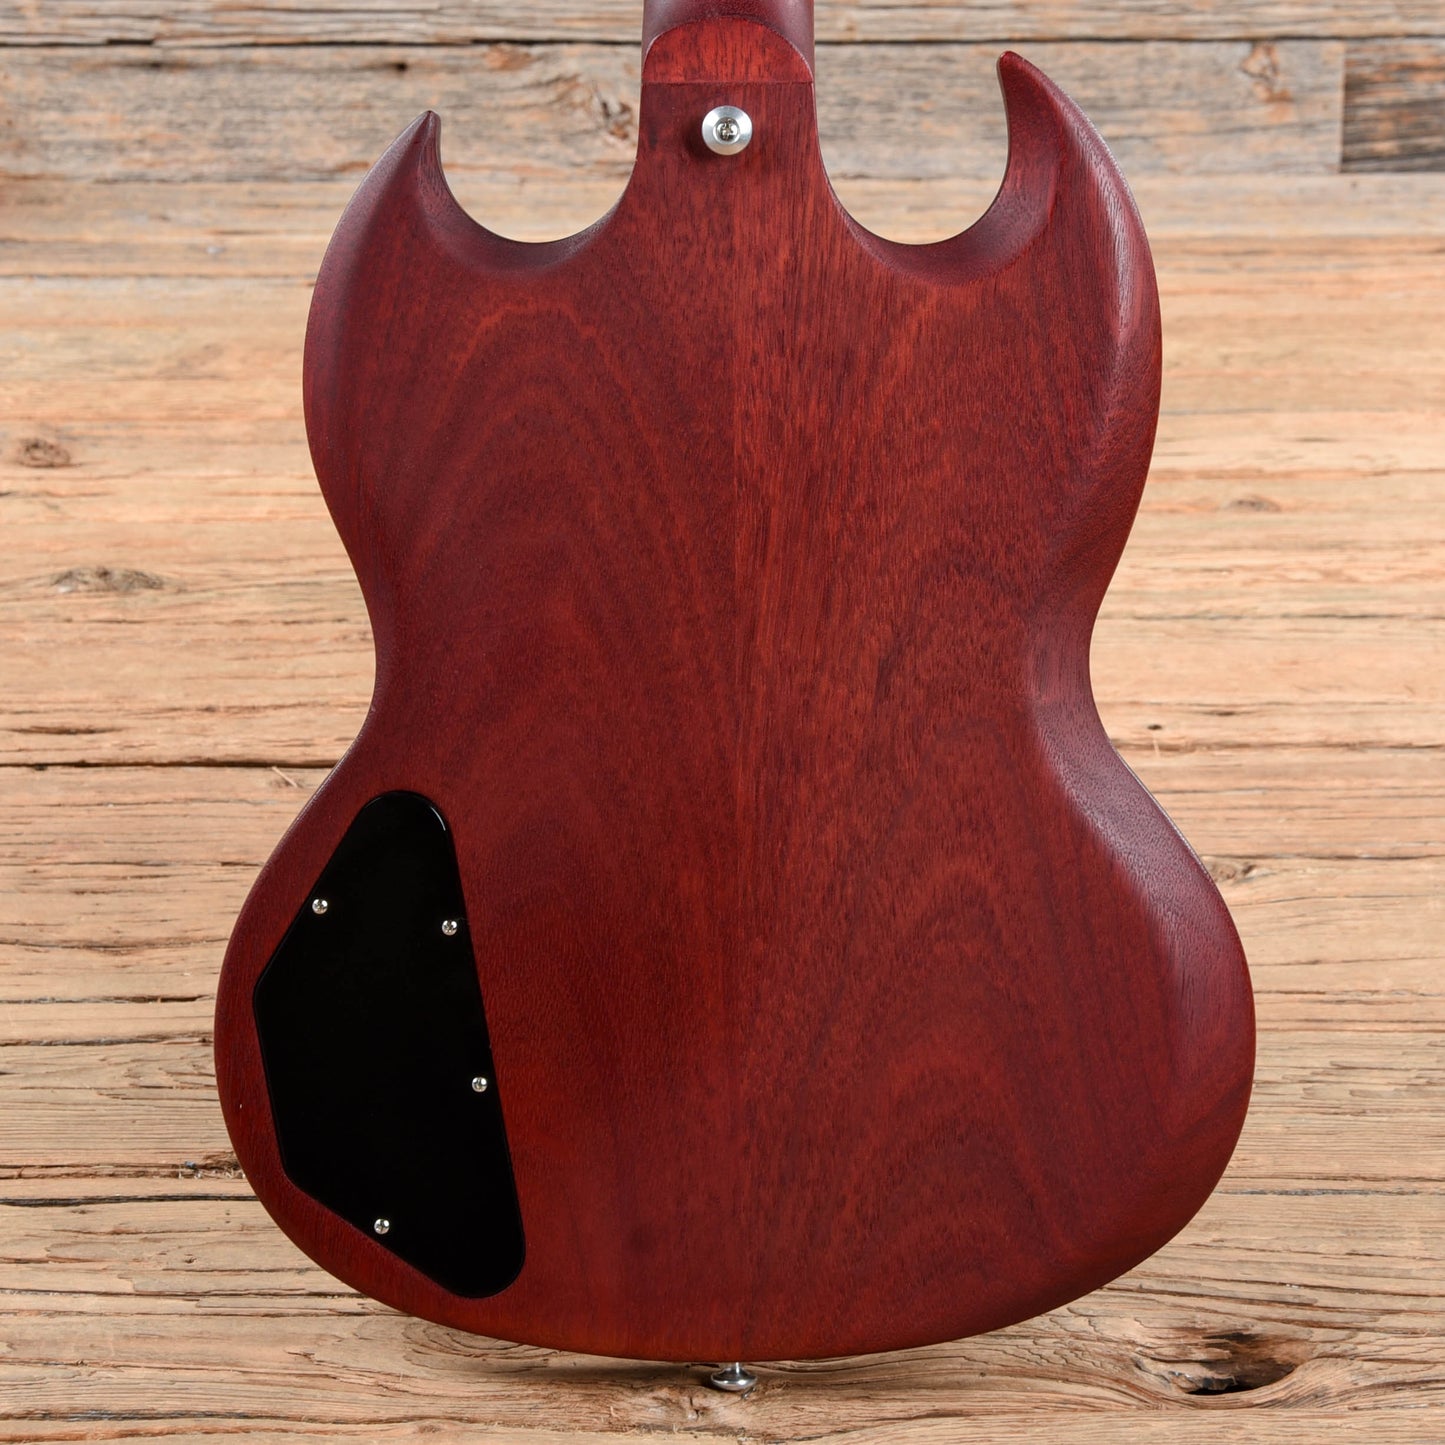 Gibson SG Bass Faded Cherry 2014 Bass Guitars / Short Scale